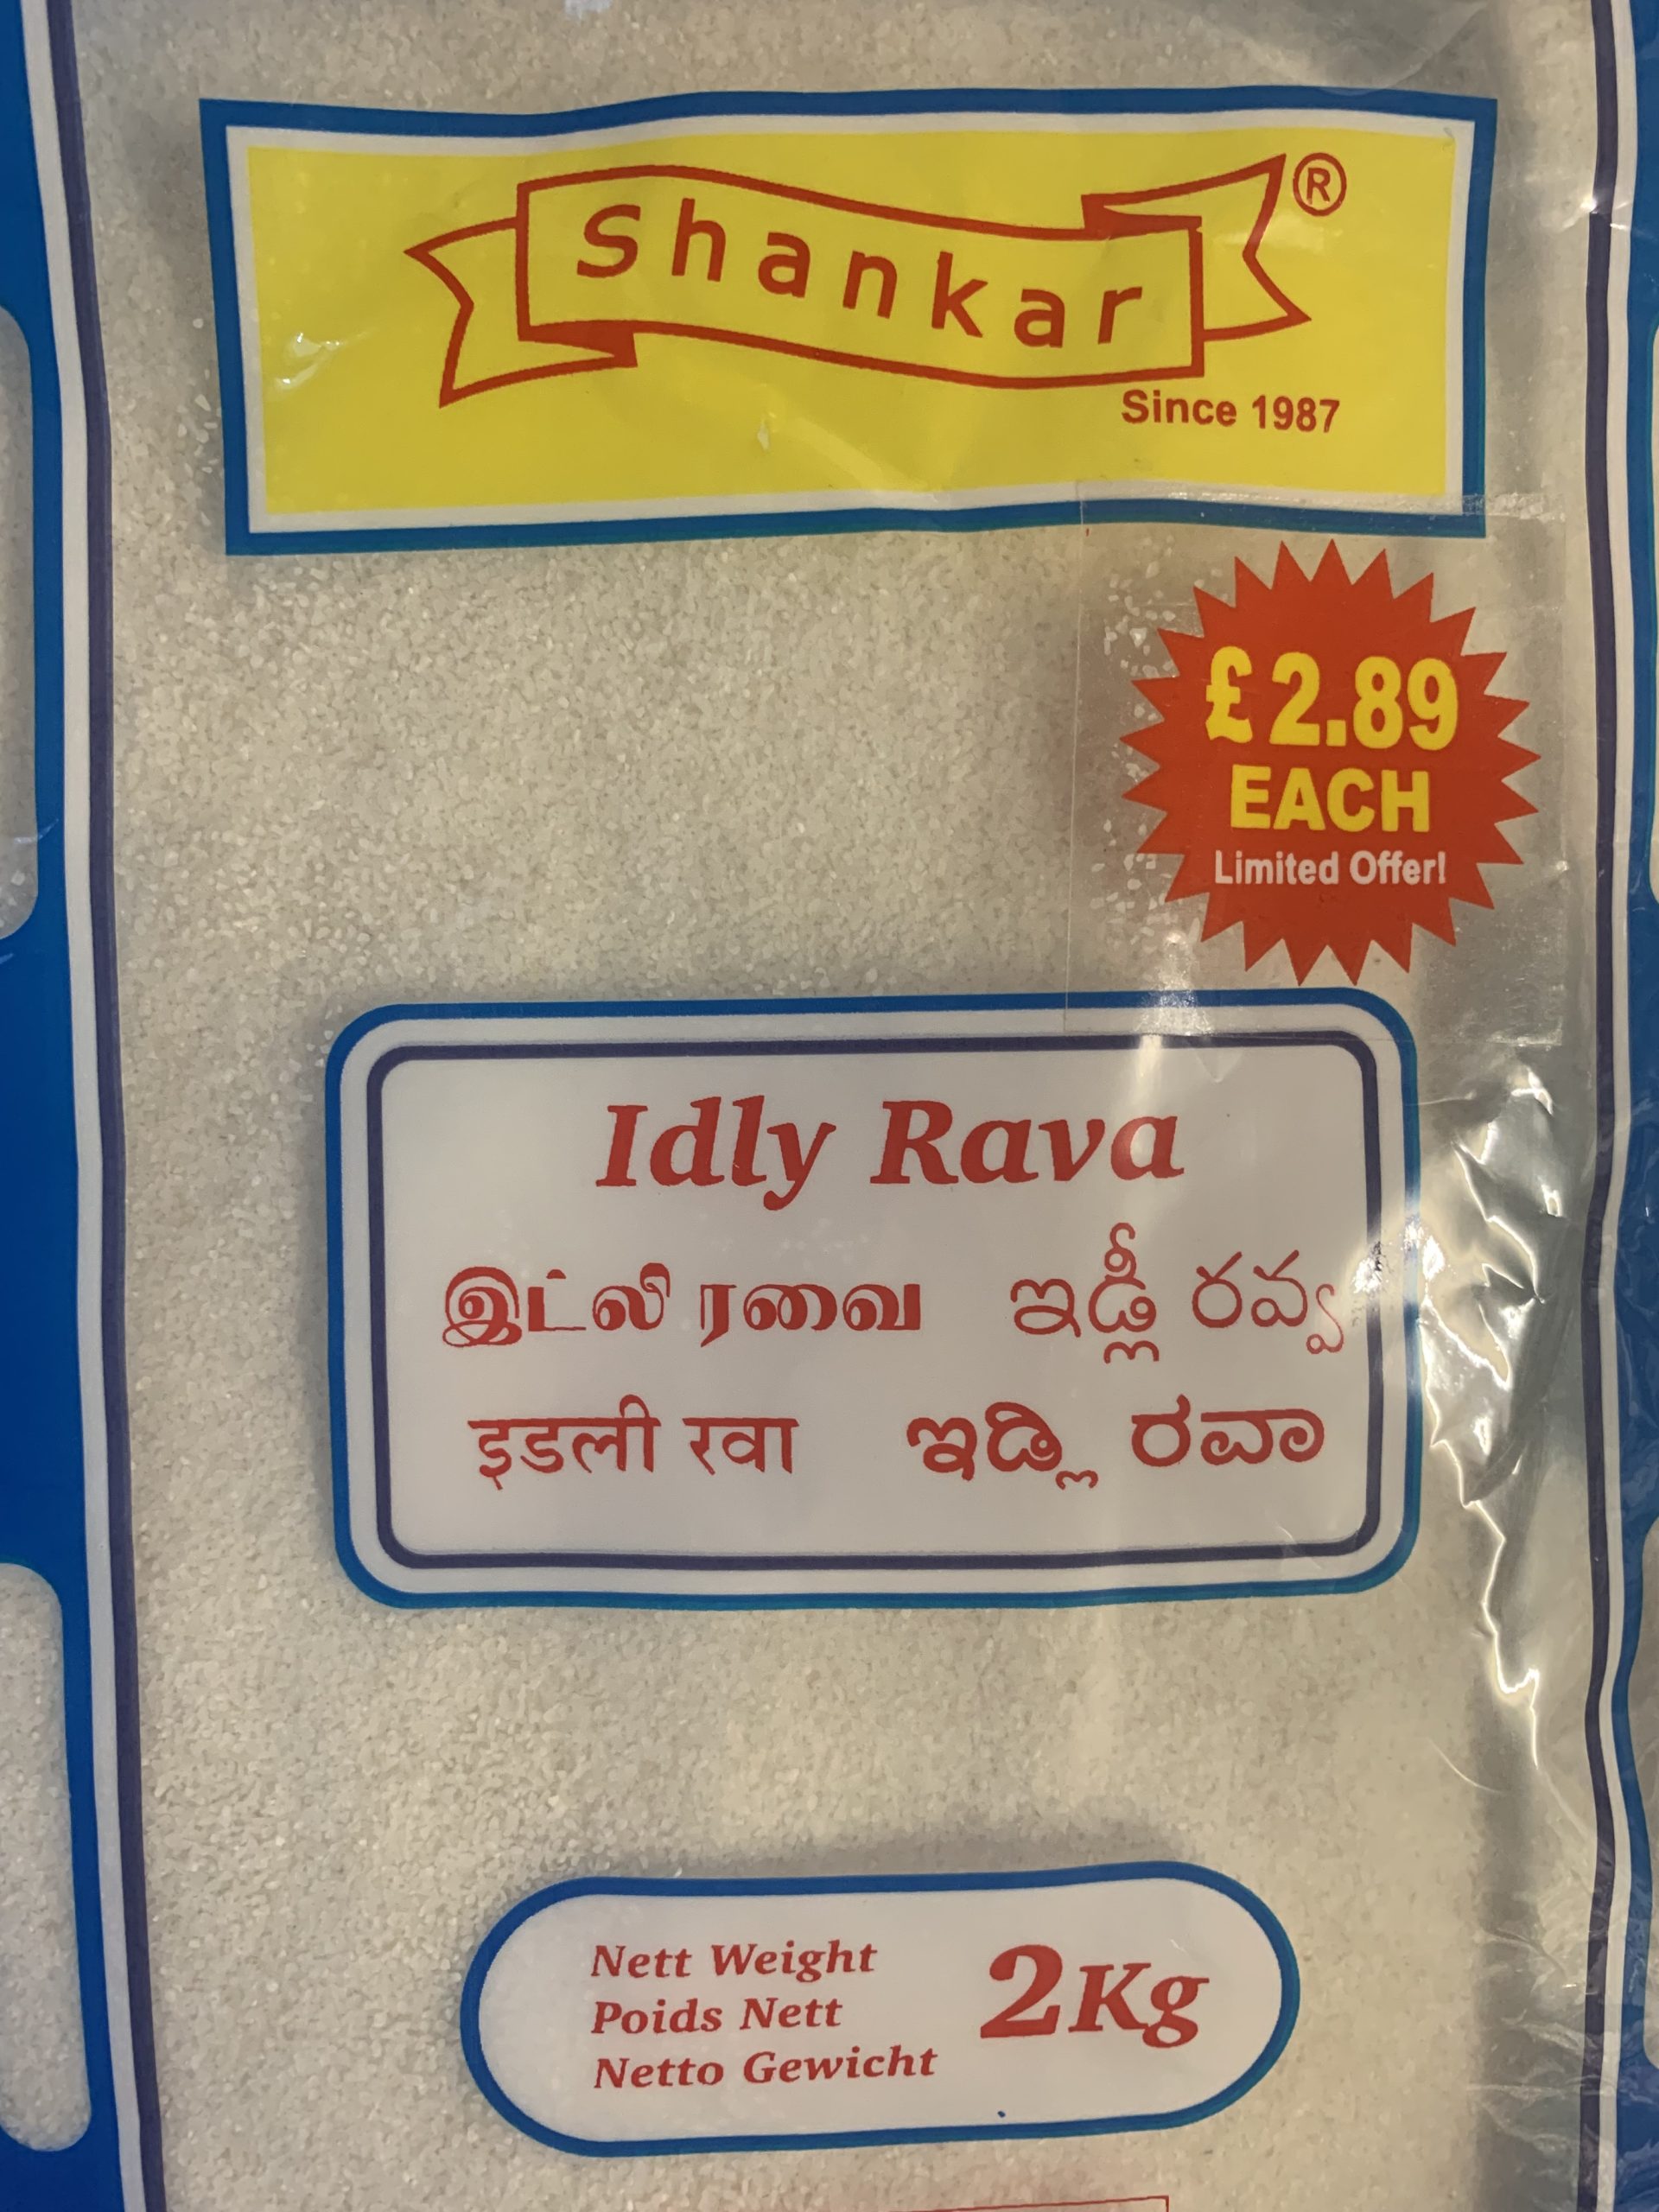 Shankar Idli Rava 1kg